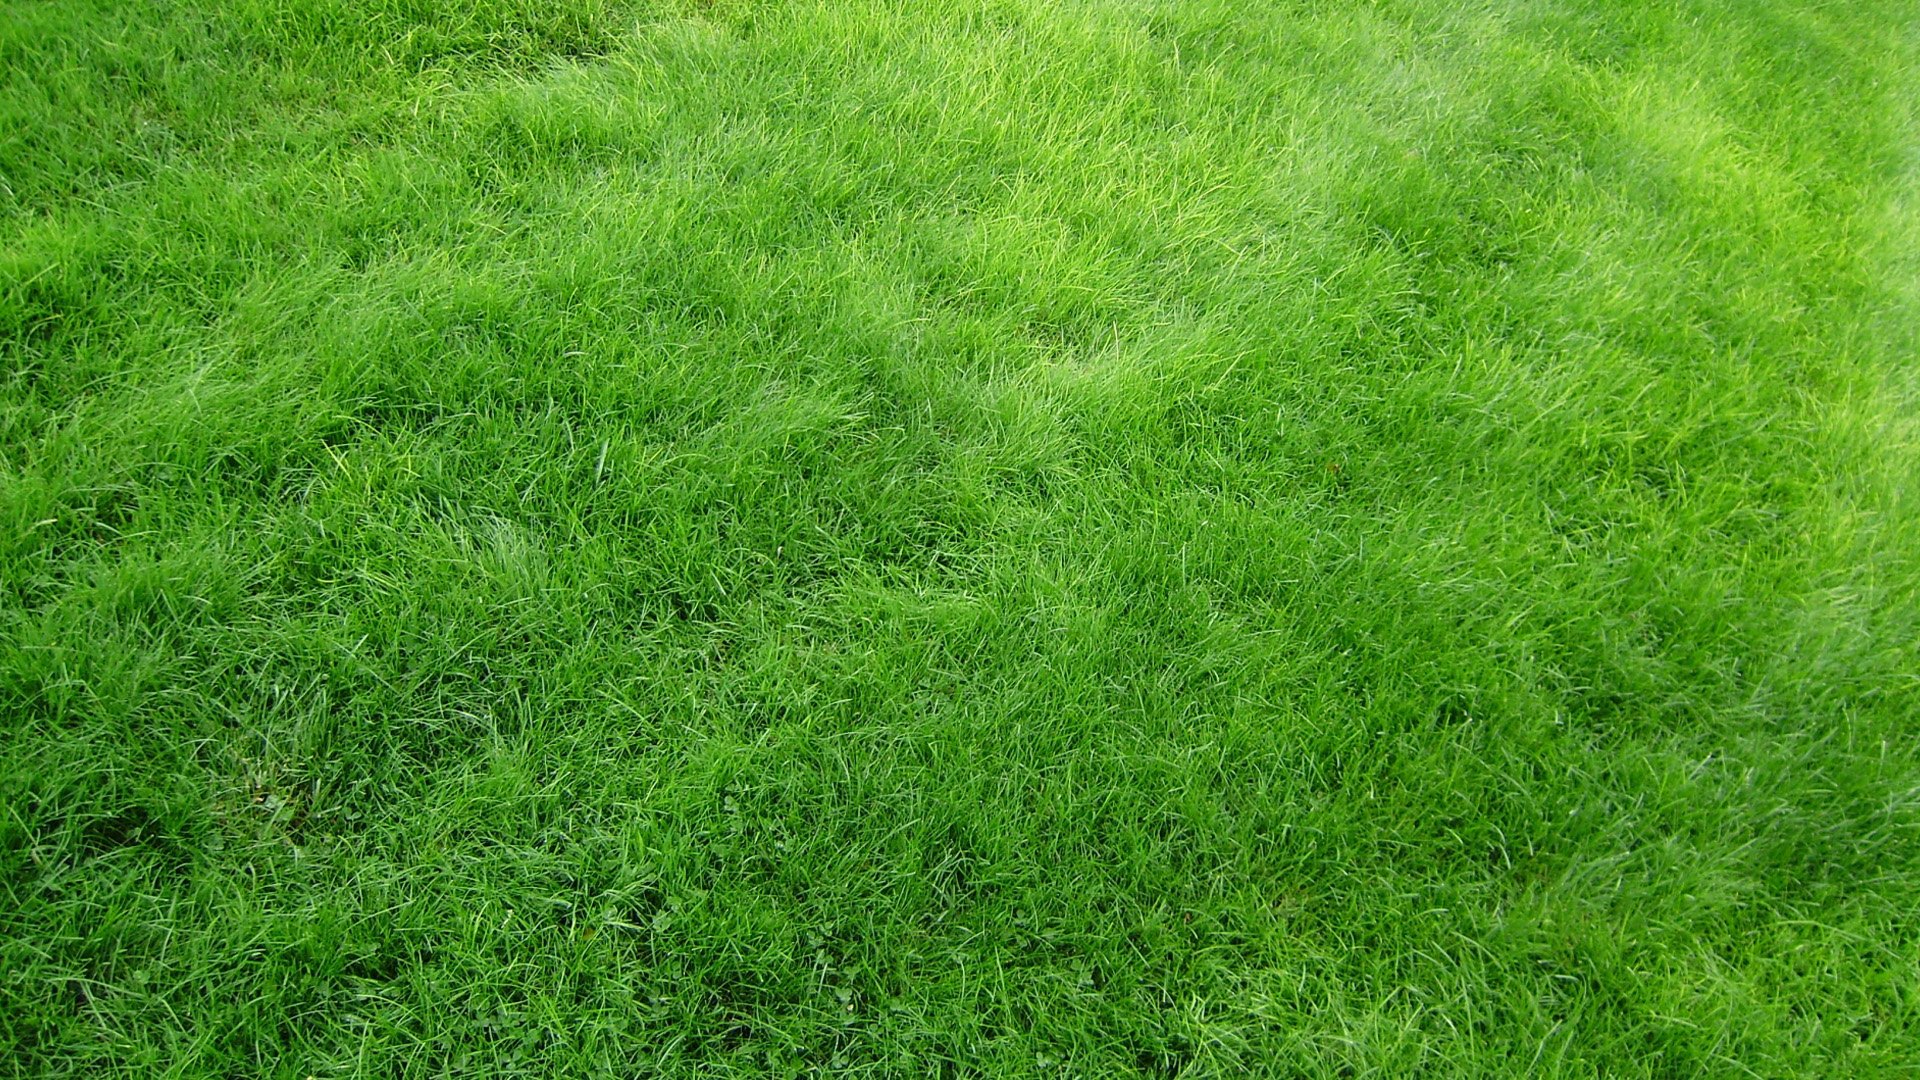 HD Wallpaper Grass Download